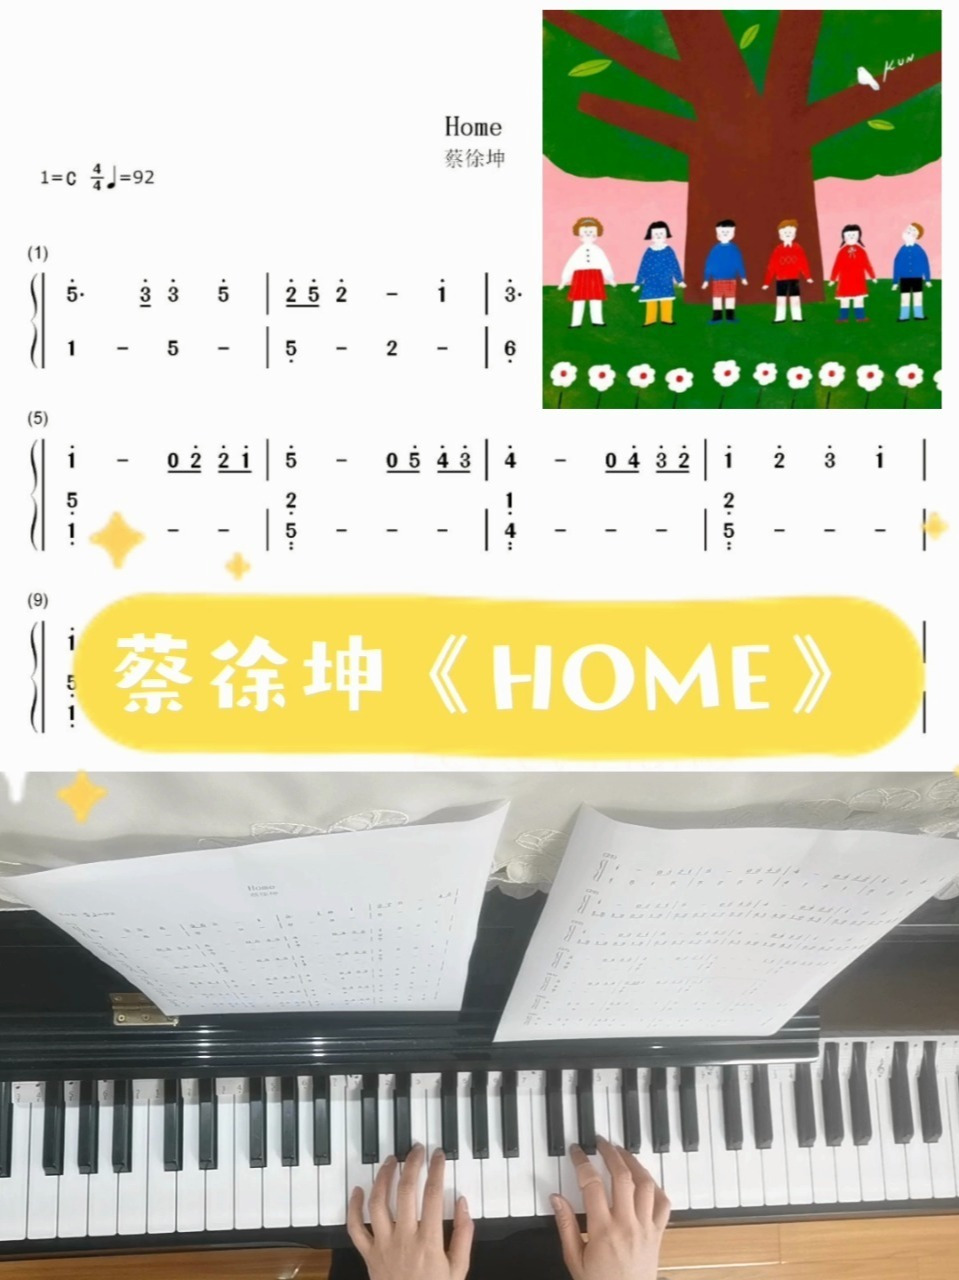 home钢琴谱数字蔡徐坤图片